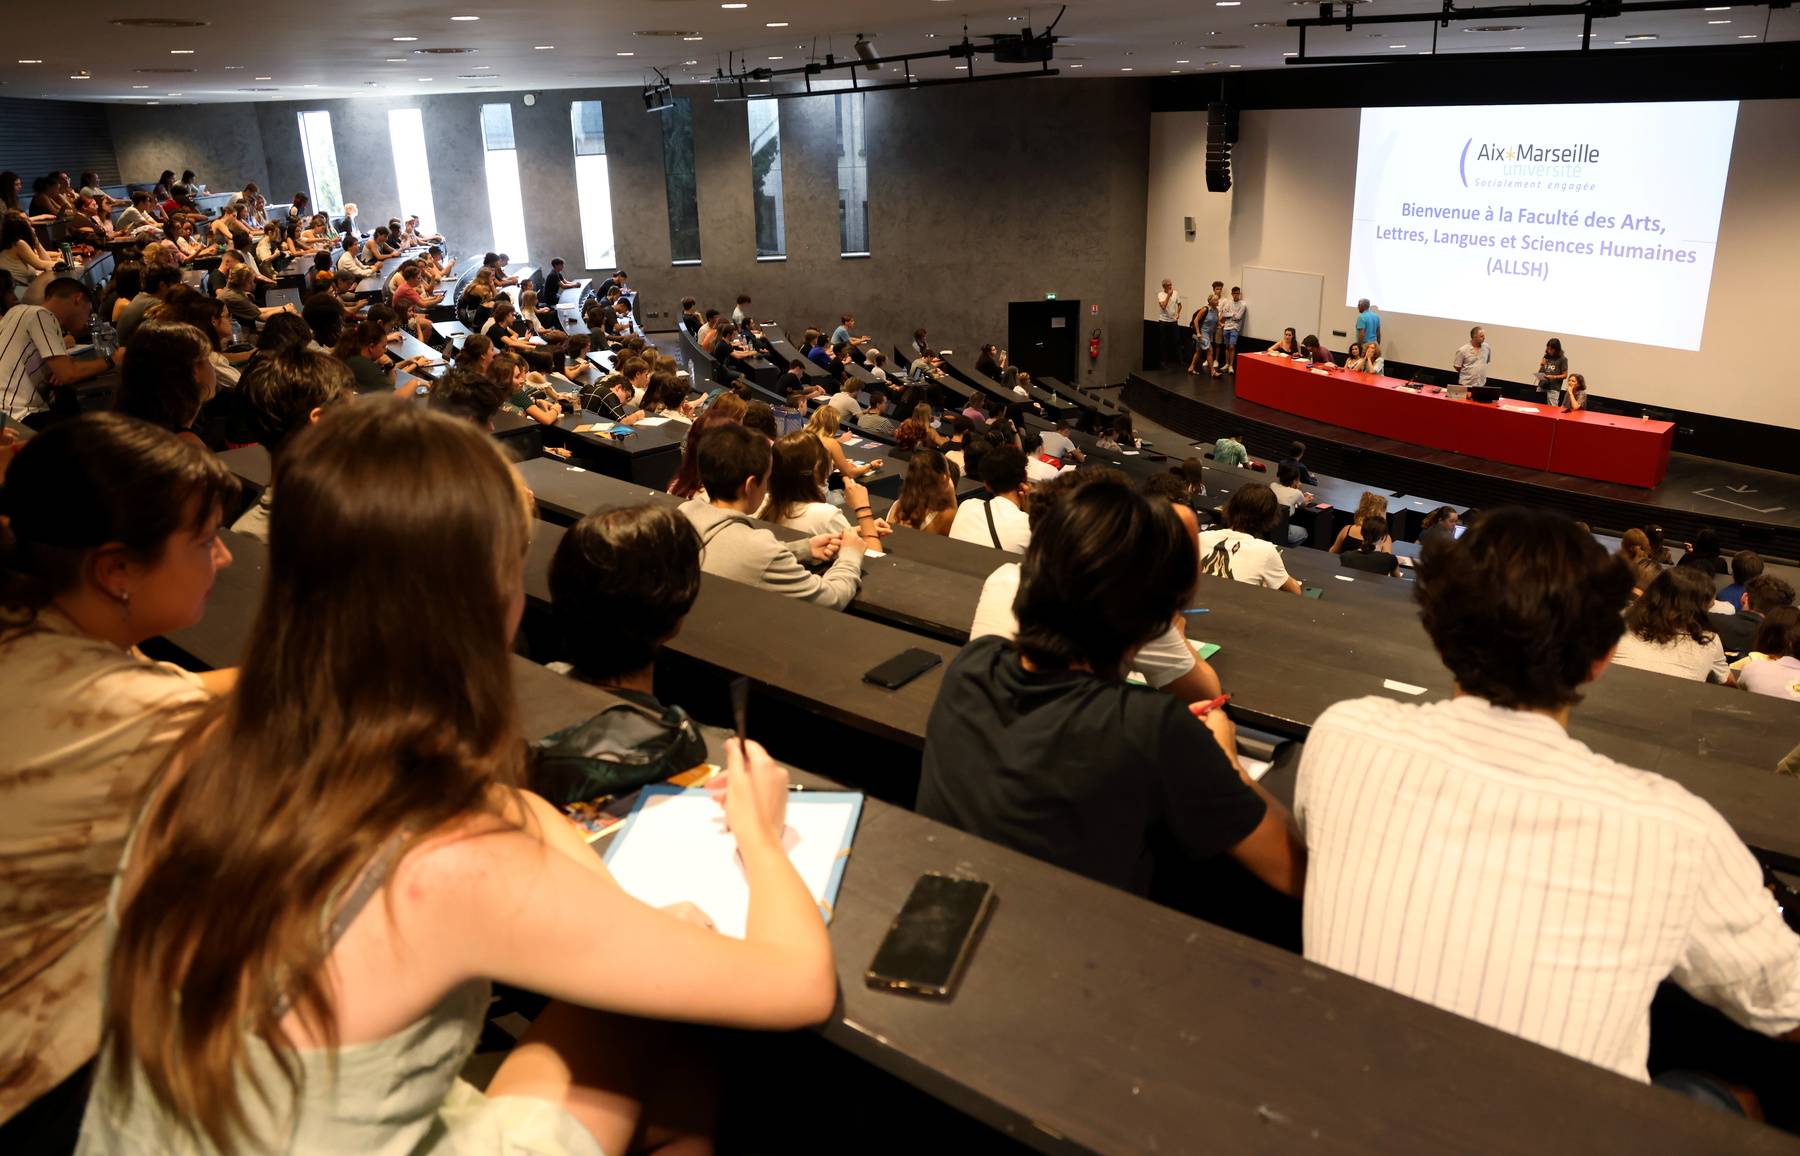 Aix-Marseille : l'université oeuvre pour plus de respect et d'égalité